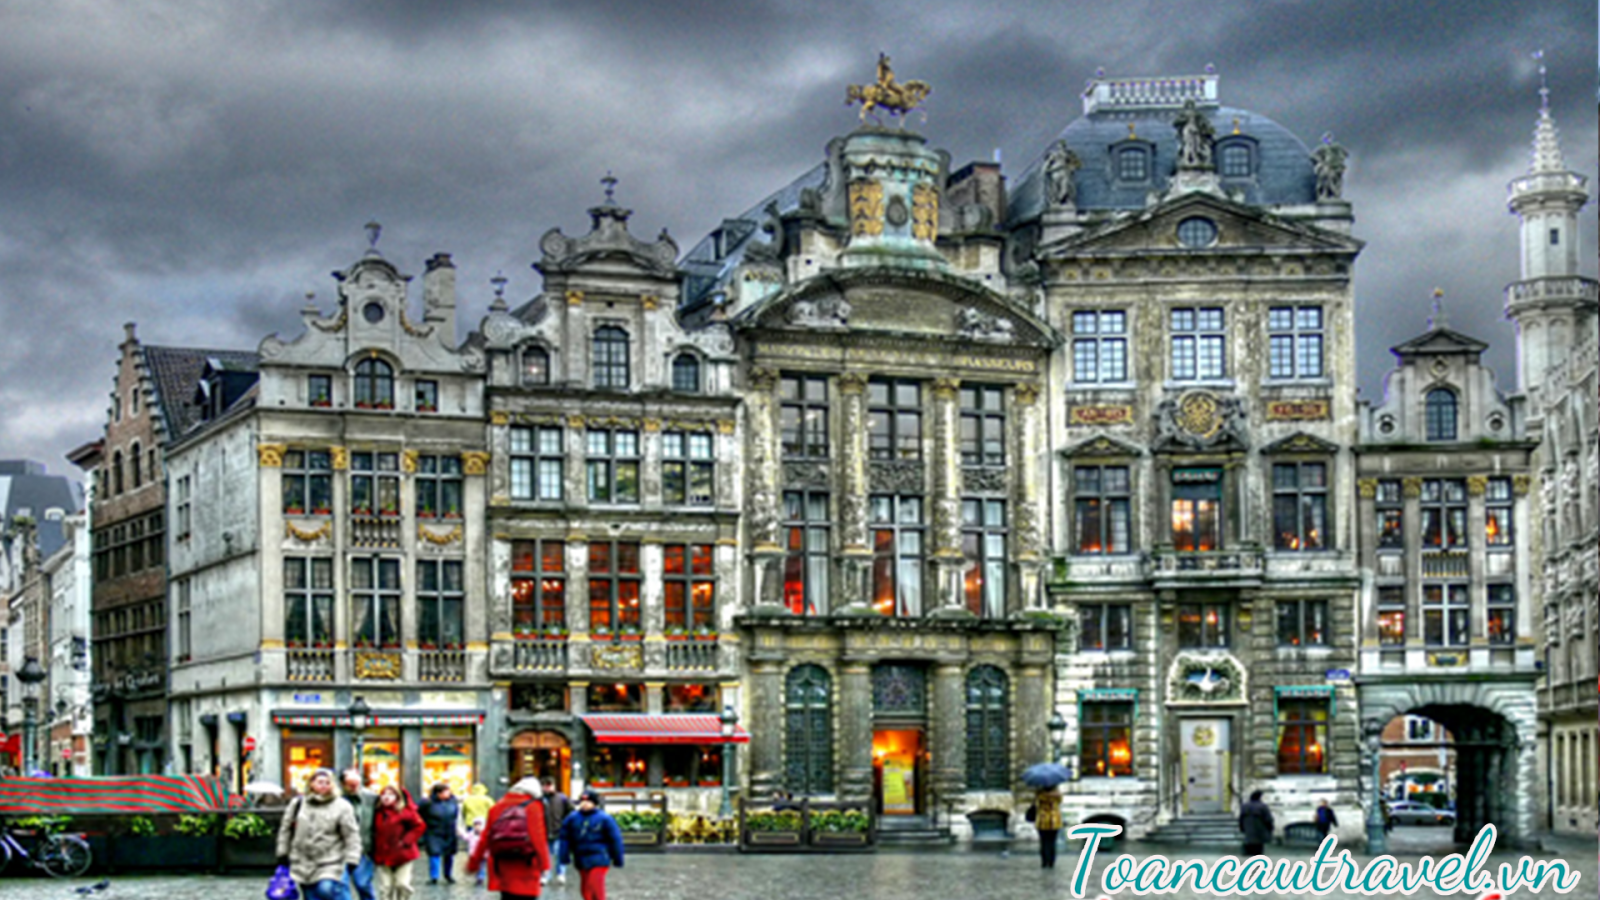 thành phố Brussel – Bỉ được biết đến như trung tâm hội nghị lớn nhất thế giới với nhiều cơ quan của liên minh Châu Âu và Nato cùng nhiều tổ chức khác đều được đặt tại đây từ sau thế chiến thứ hai kết thúc.